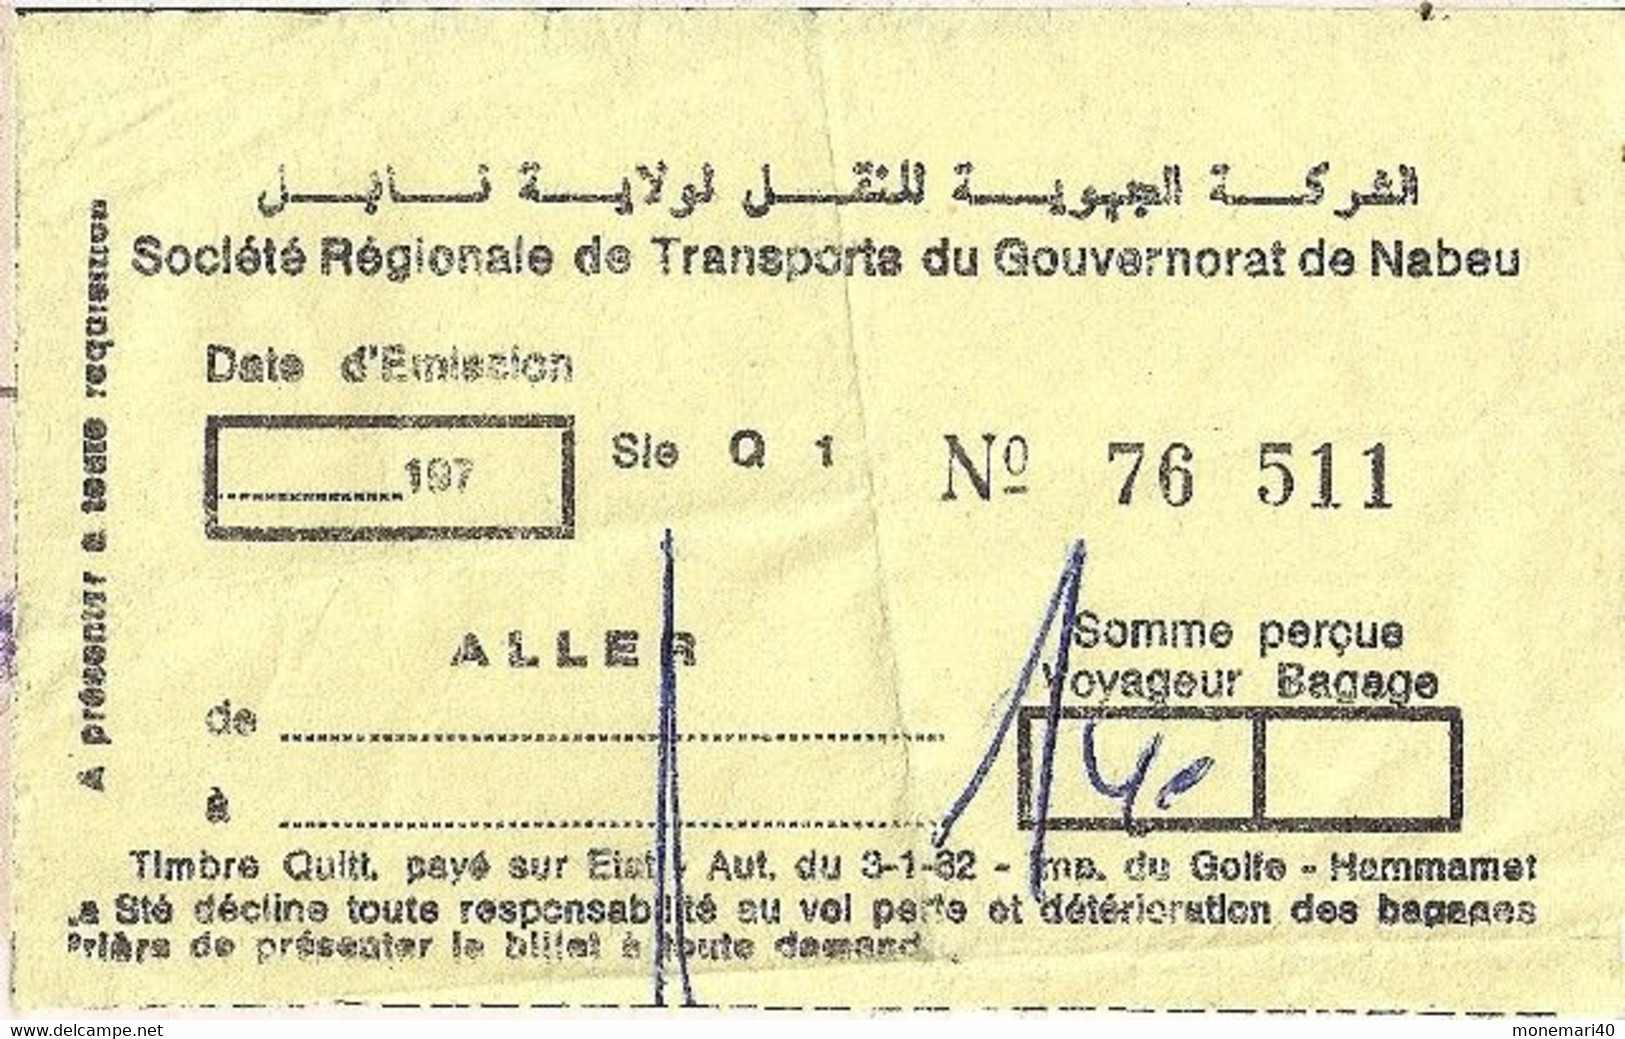 TUNISIE - SOCIÉTÉ RÉGIONALE DE TRANSPORTS DU GOUVERNORAT DE NABEU - Welt